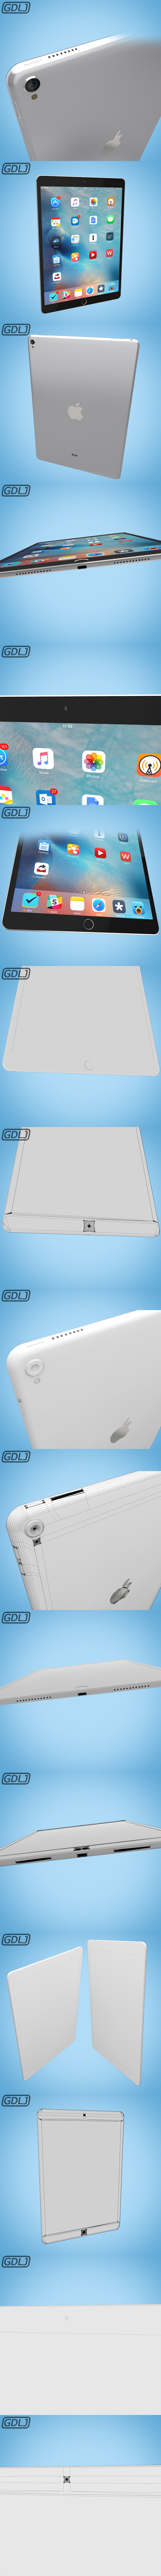 iPad Pro - 3Docean 22810257